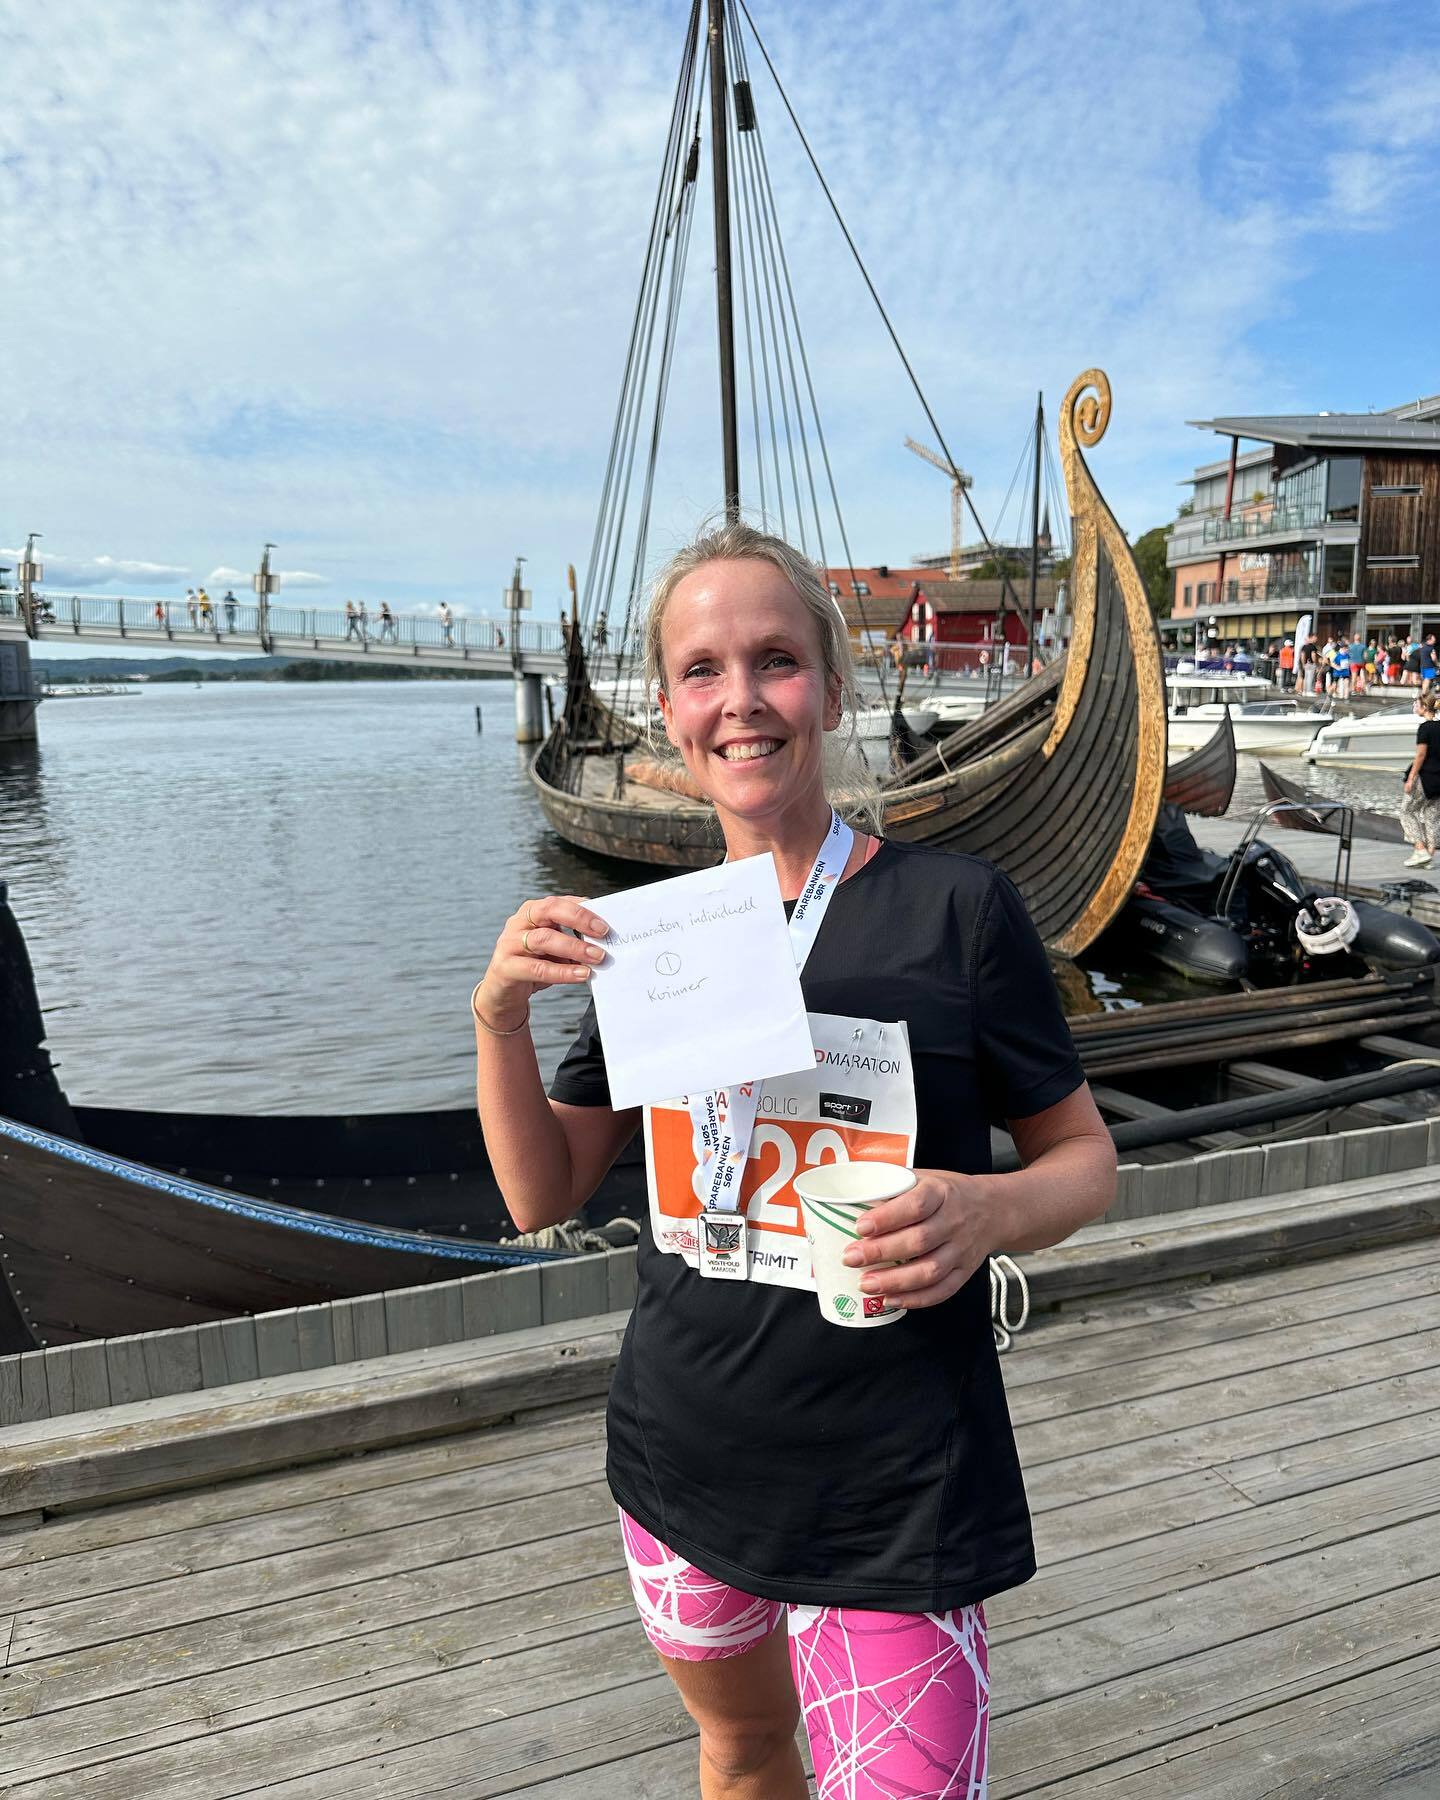 Vinner 12 maraton kvinner Linda Marie Magnussen.jpg